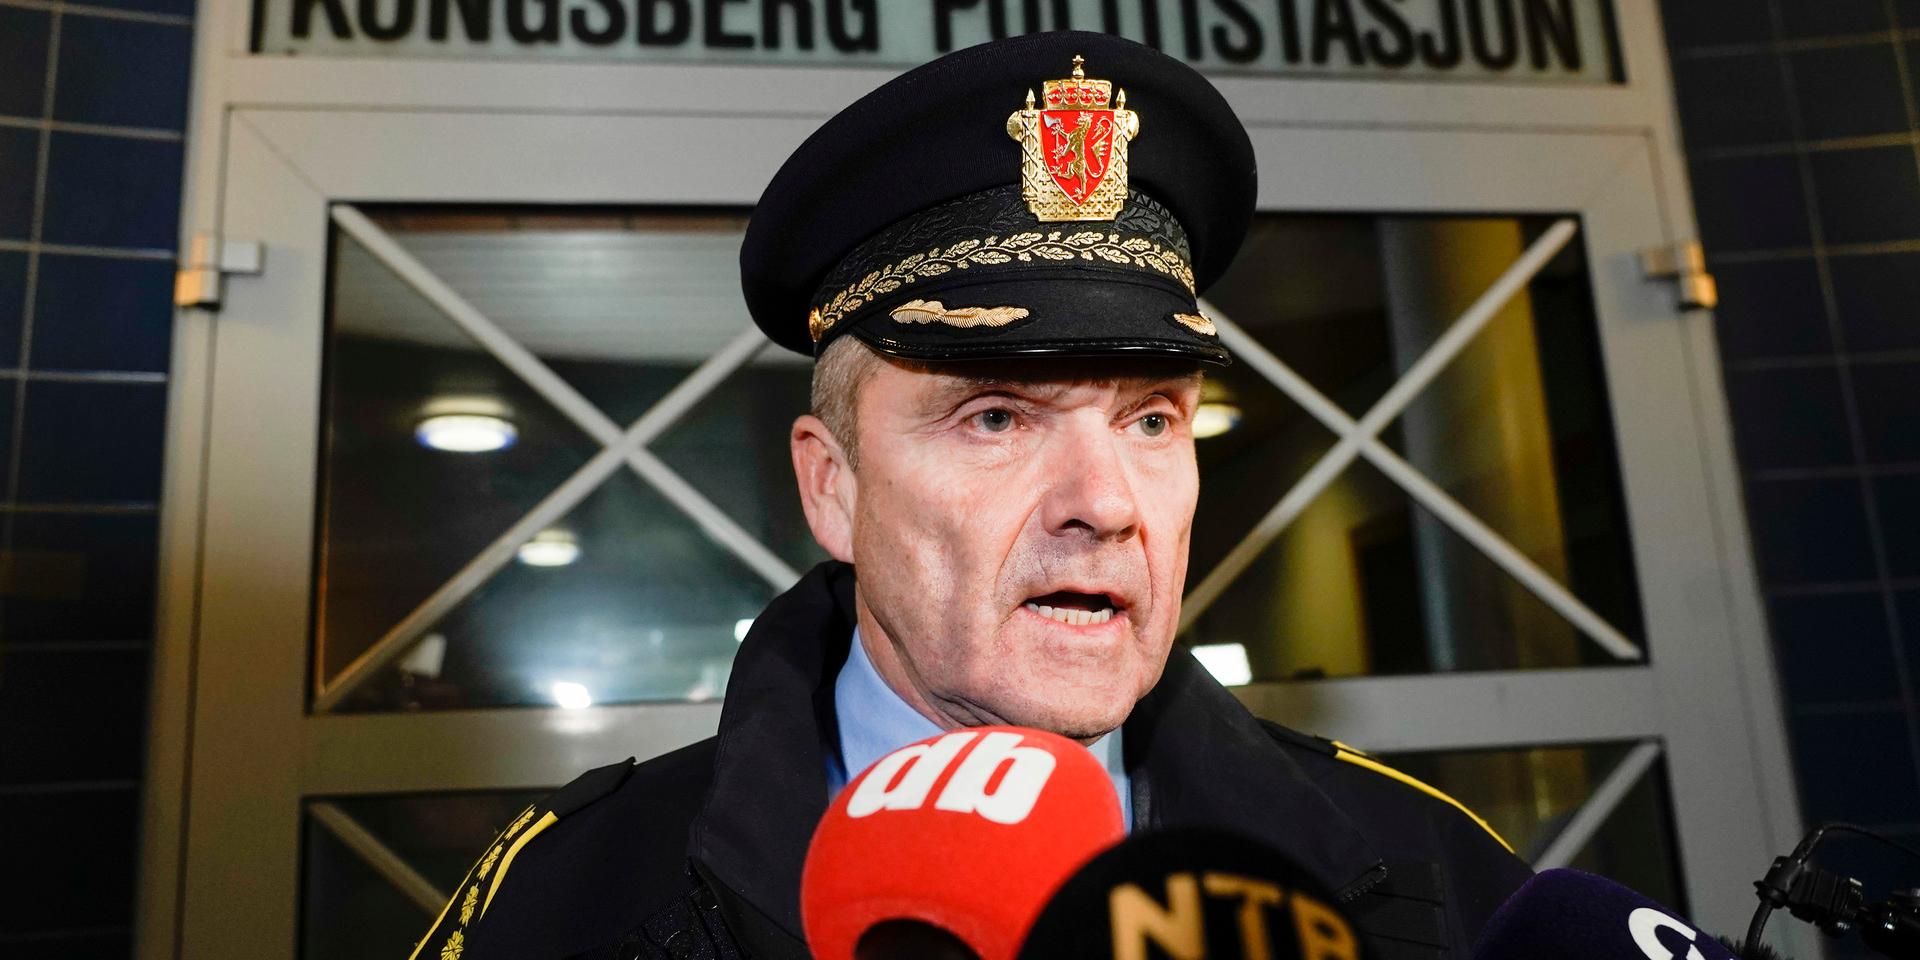 Polisinspektör Øyvind Aas håller i presskonferenser under kvällen och skriver på polisens hemsida att det är en allvarlig och mycket omfattande situation.